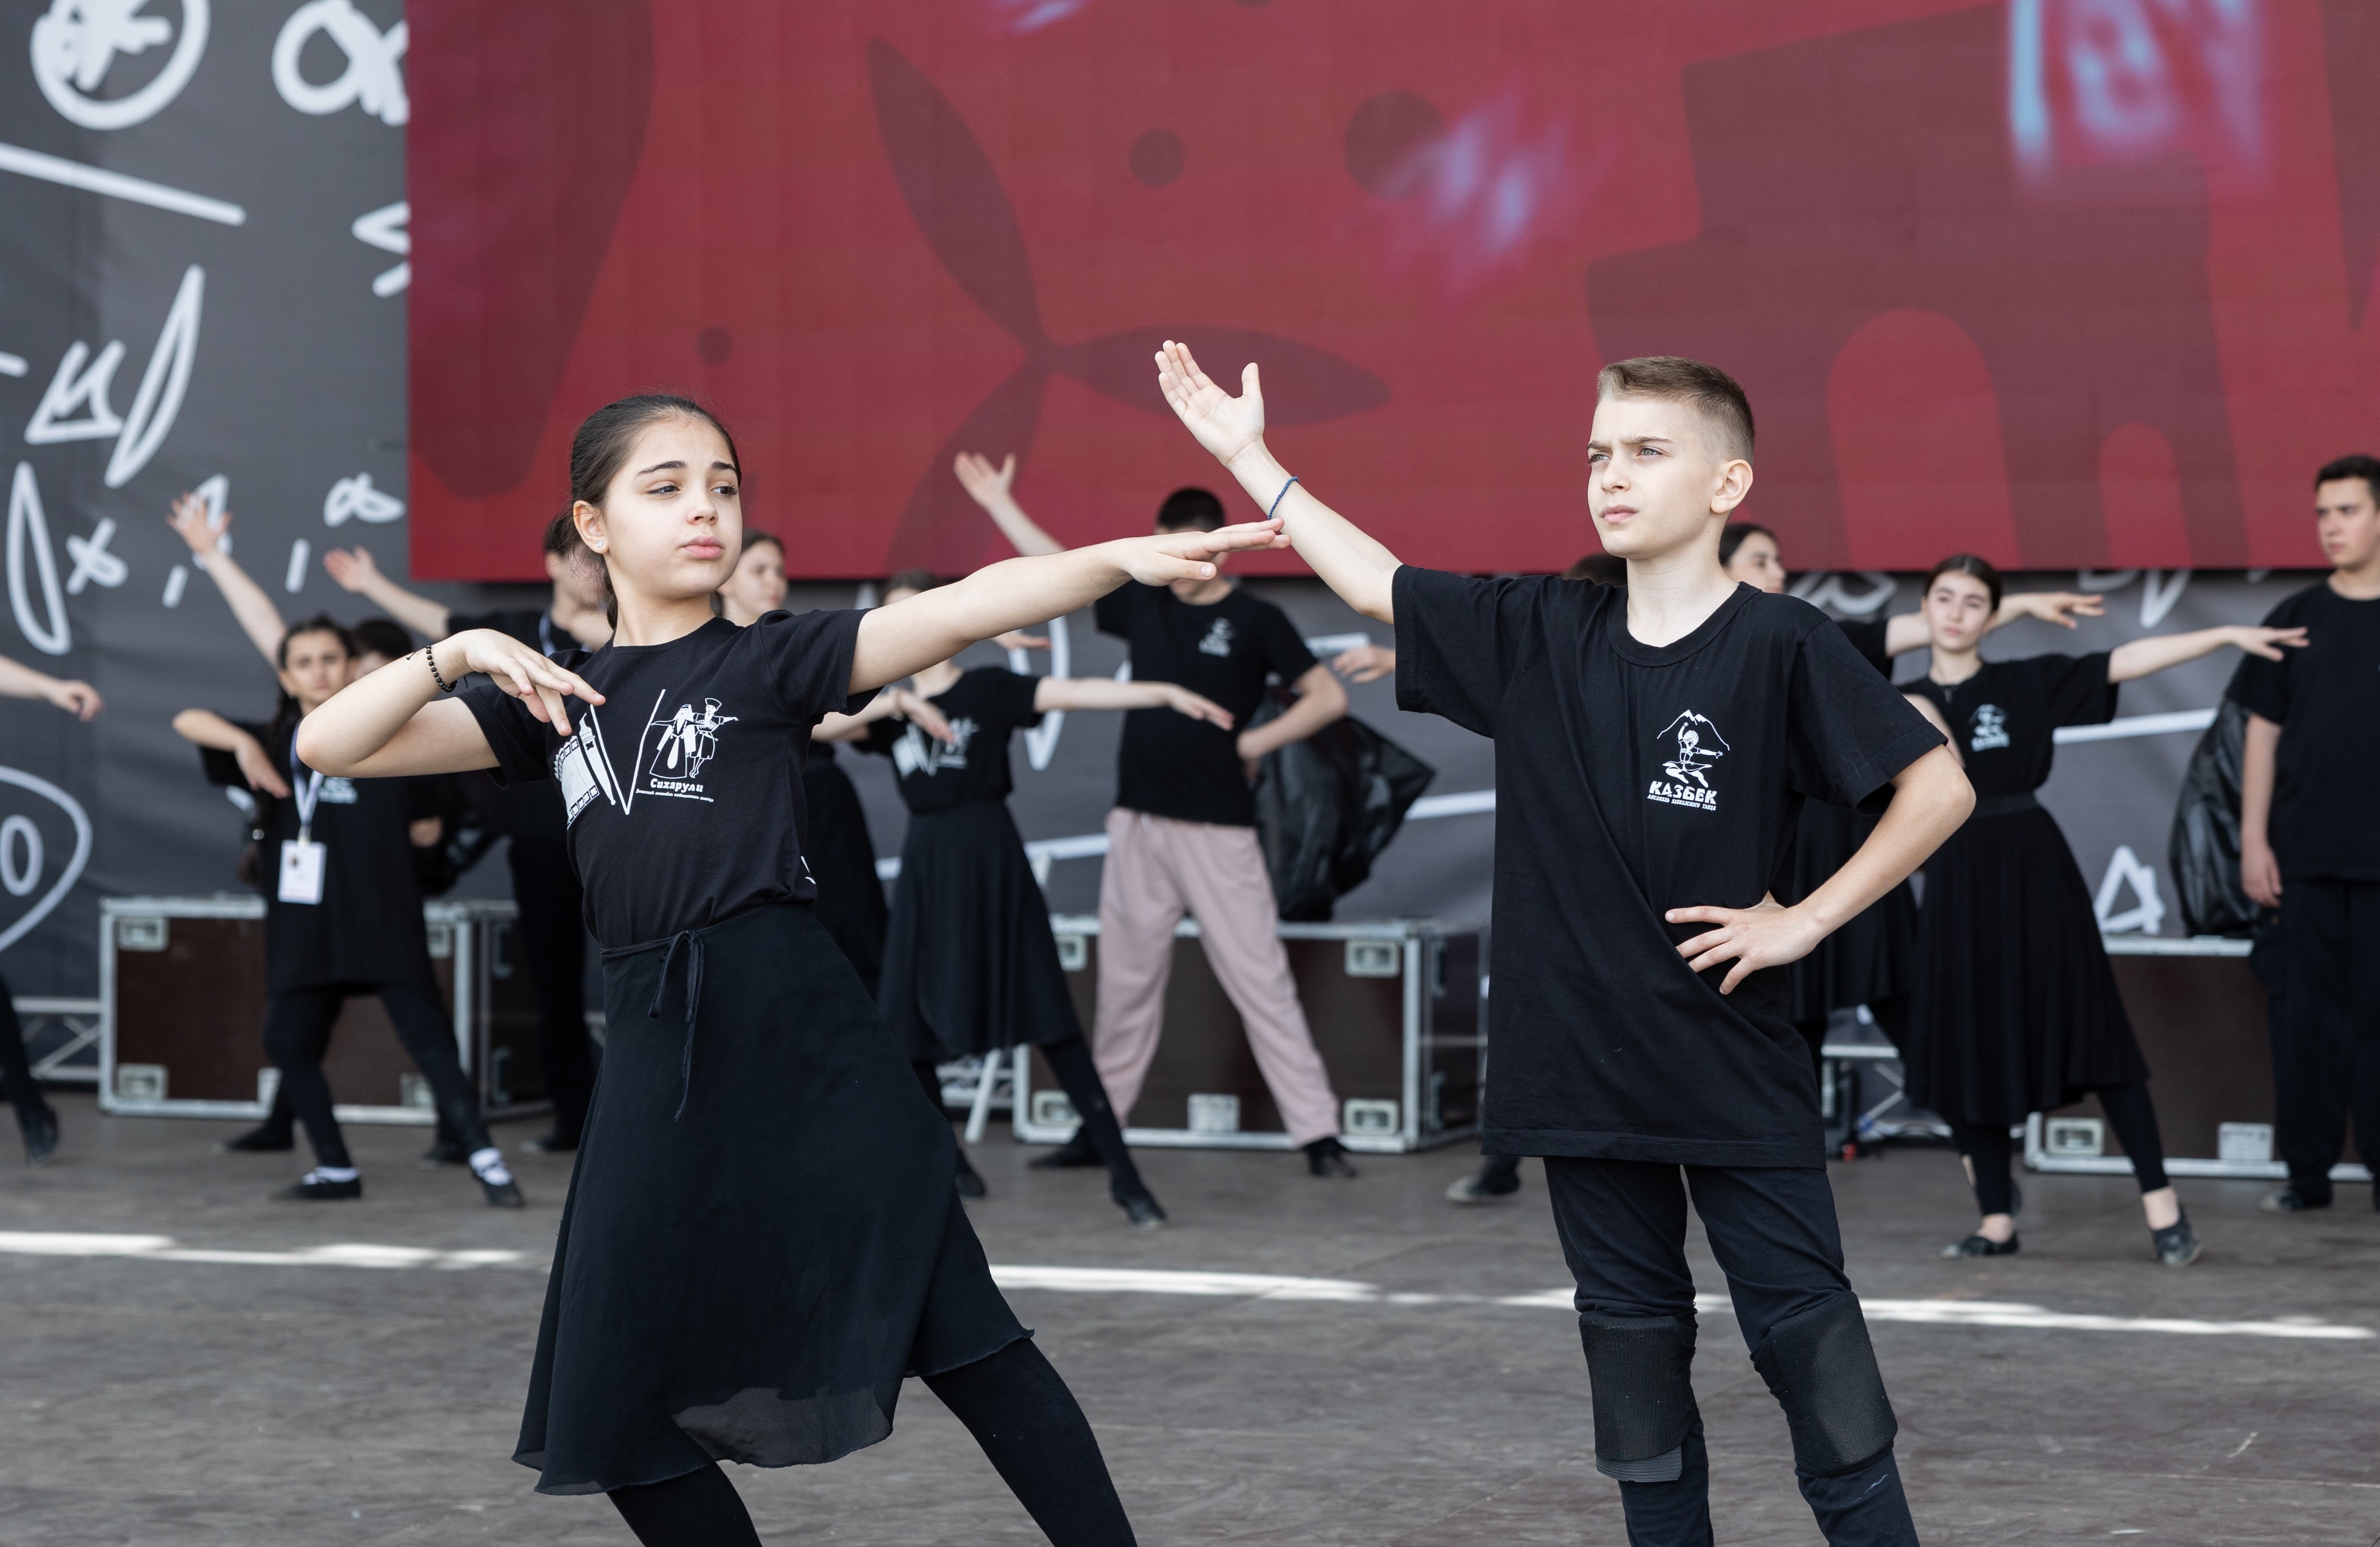 II Всероссийский фестиваль «Российская школьная весна» готов встречать 1 200 школьников России